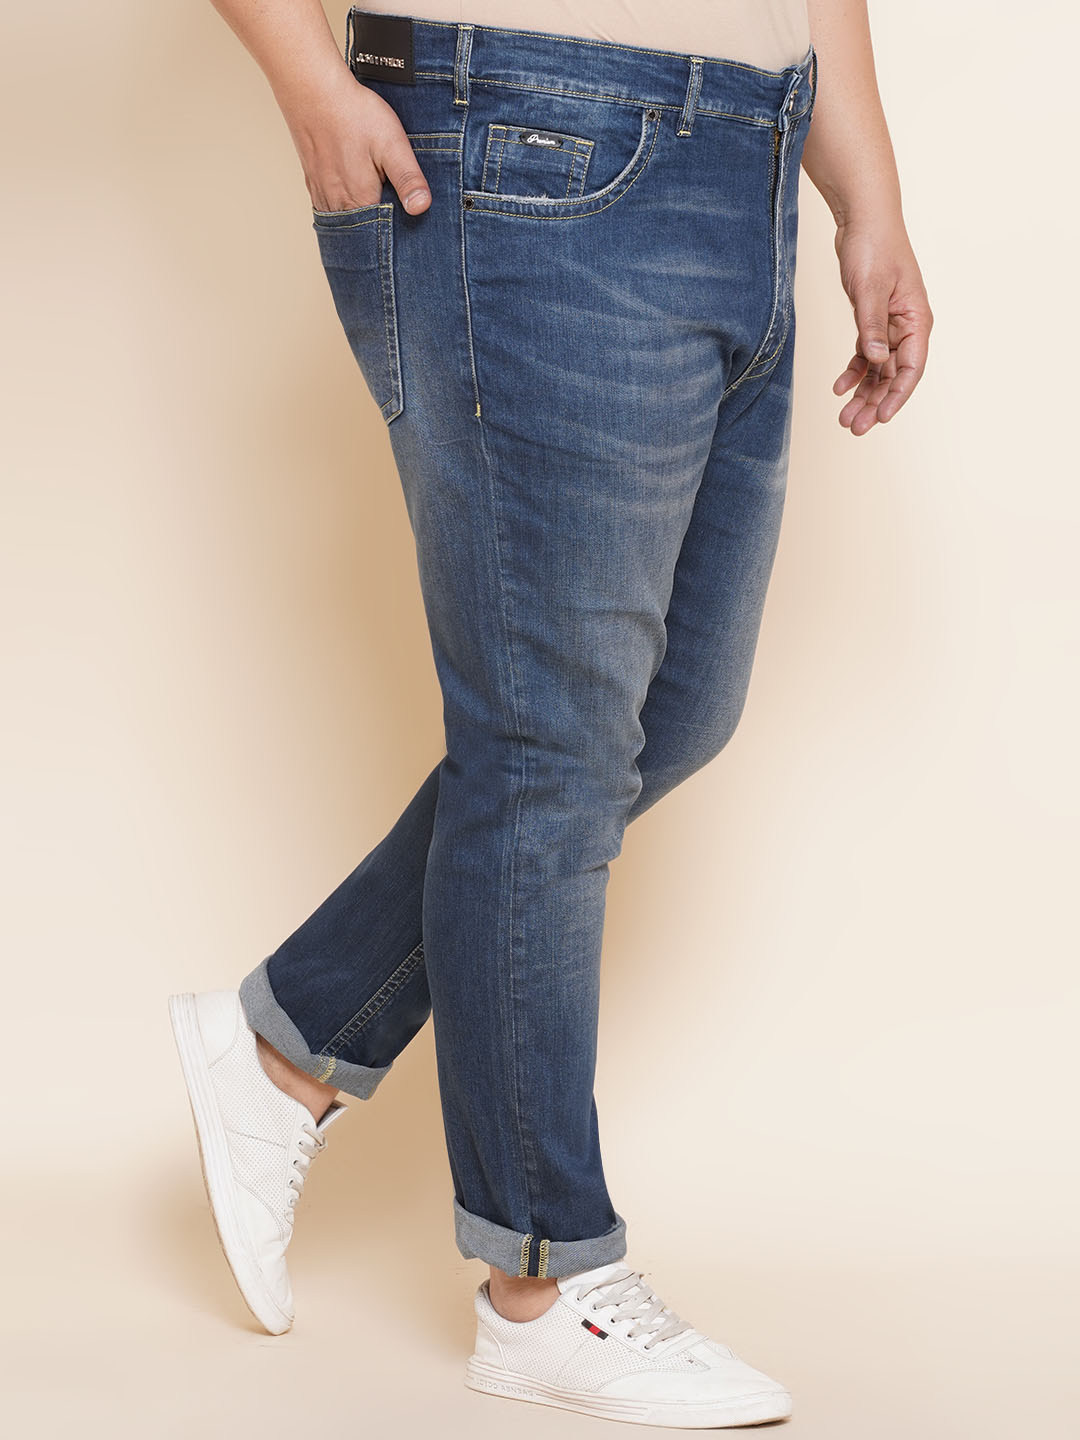 bottomwear/jeans/PJPJ6063/pjpj6063-3.jpg